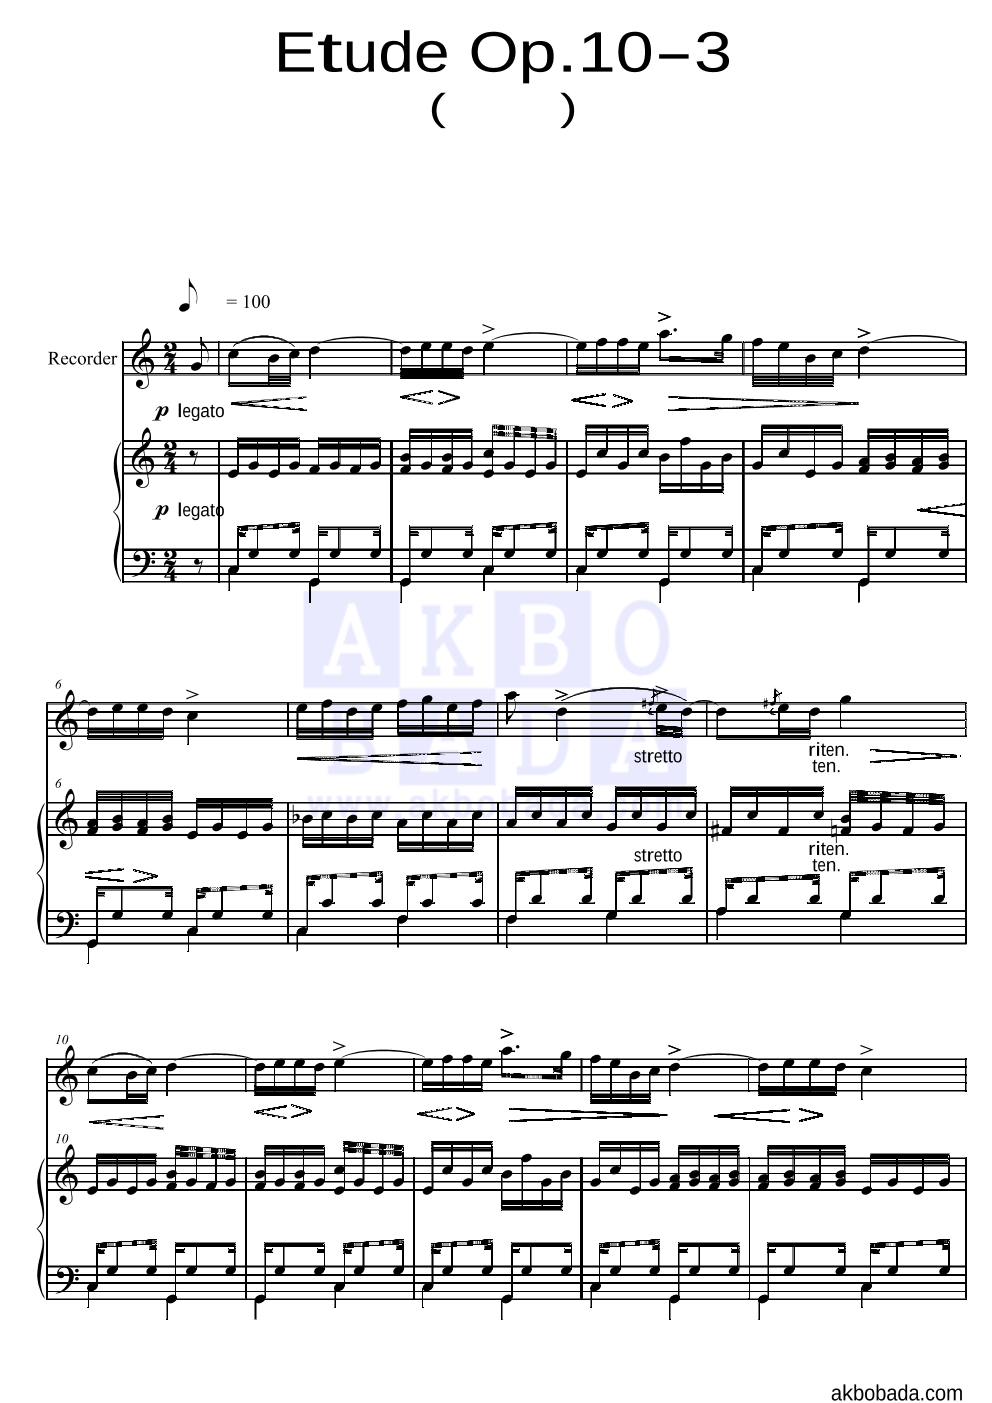 쇼팽 - Etude Op.10 No.3(이별곡) 리코더&피아노 악보 